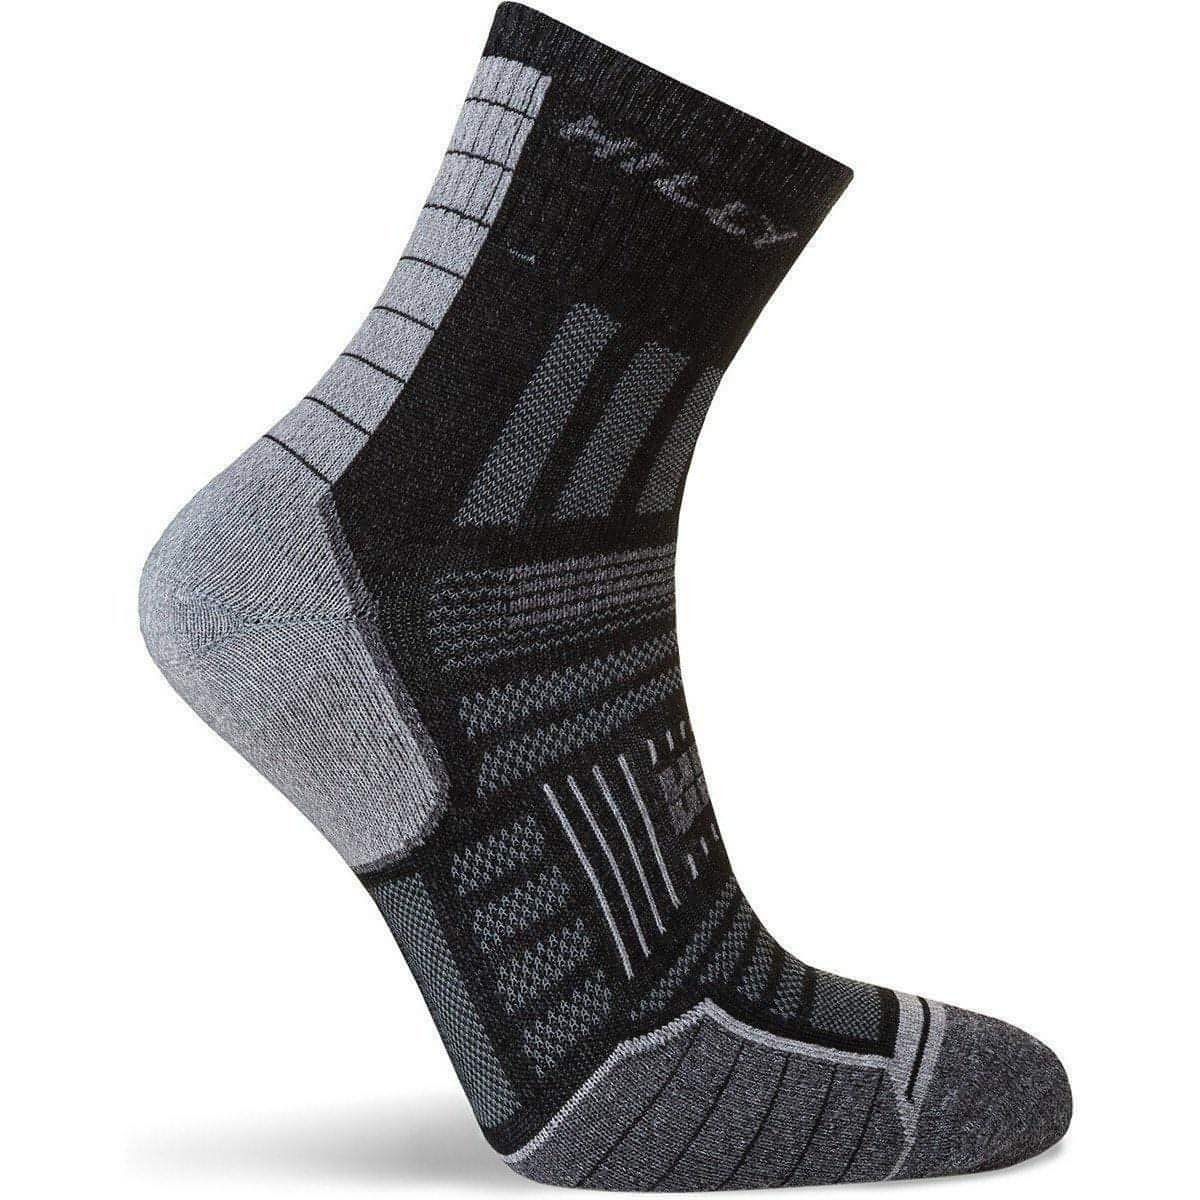 Hilly Twin Skin Anklet Running Socks - Black - Start Fitness